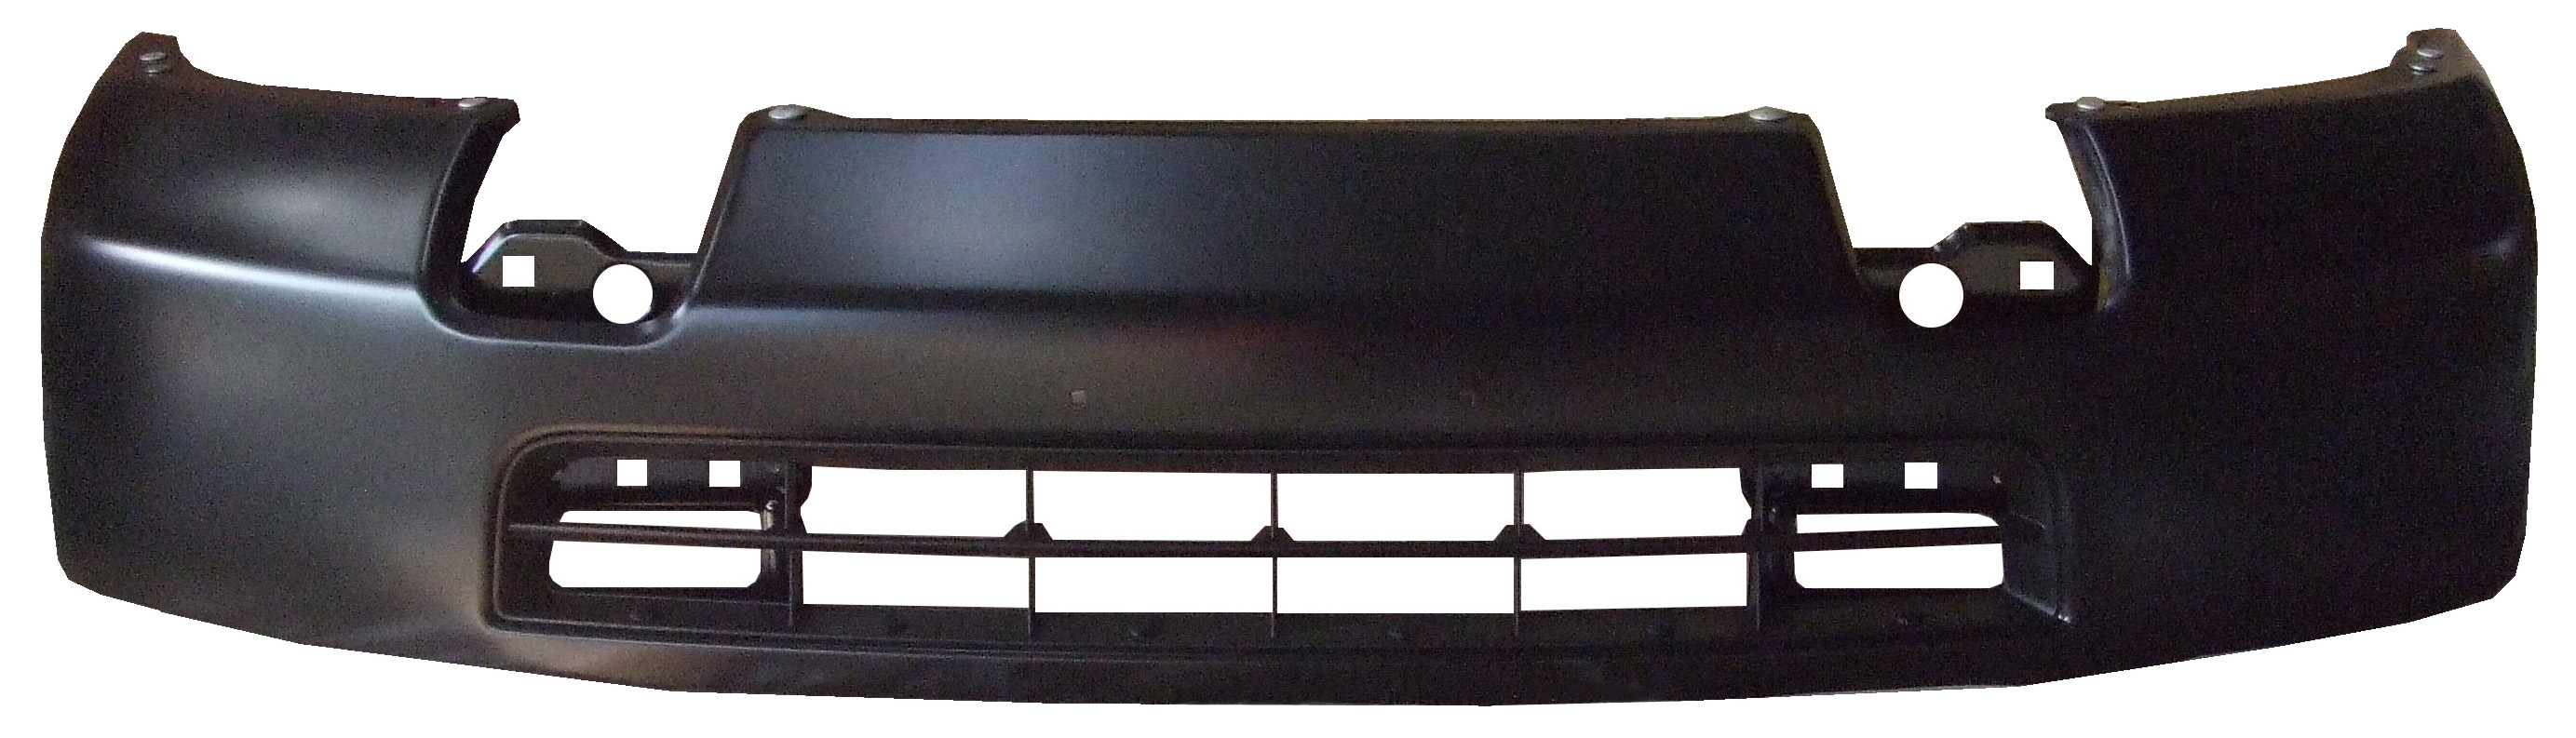 Aftermarket METAL FRONT BUMPERS for NISSAN - NV3500, NV3500,12-21,Front bumper face bar